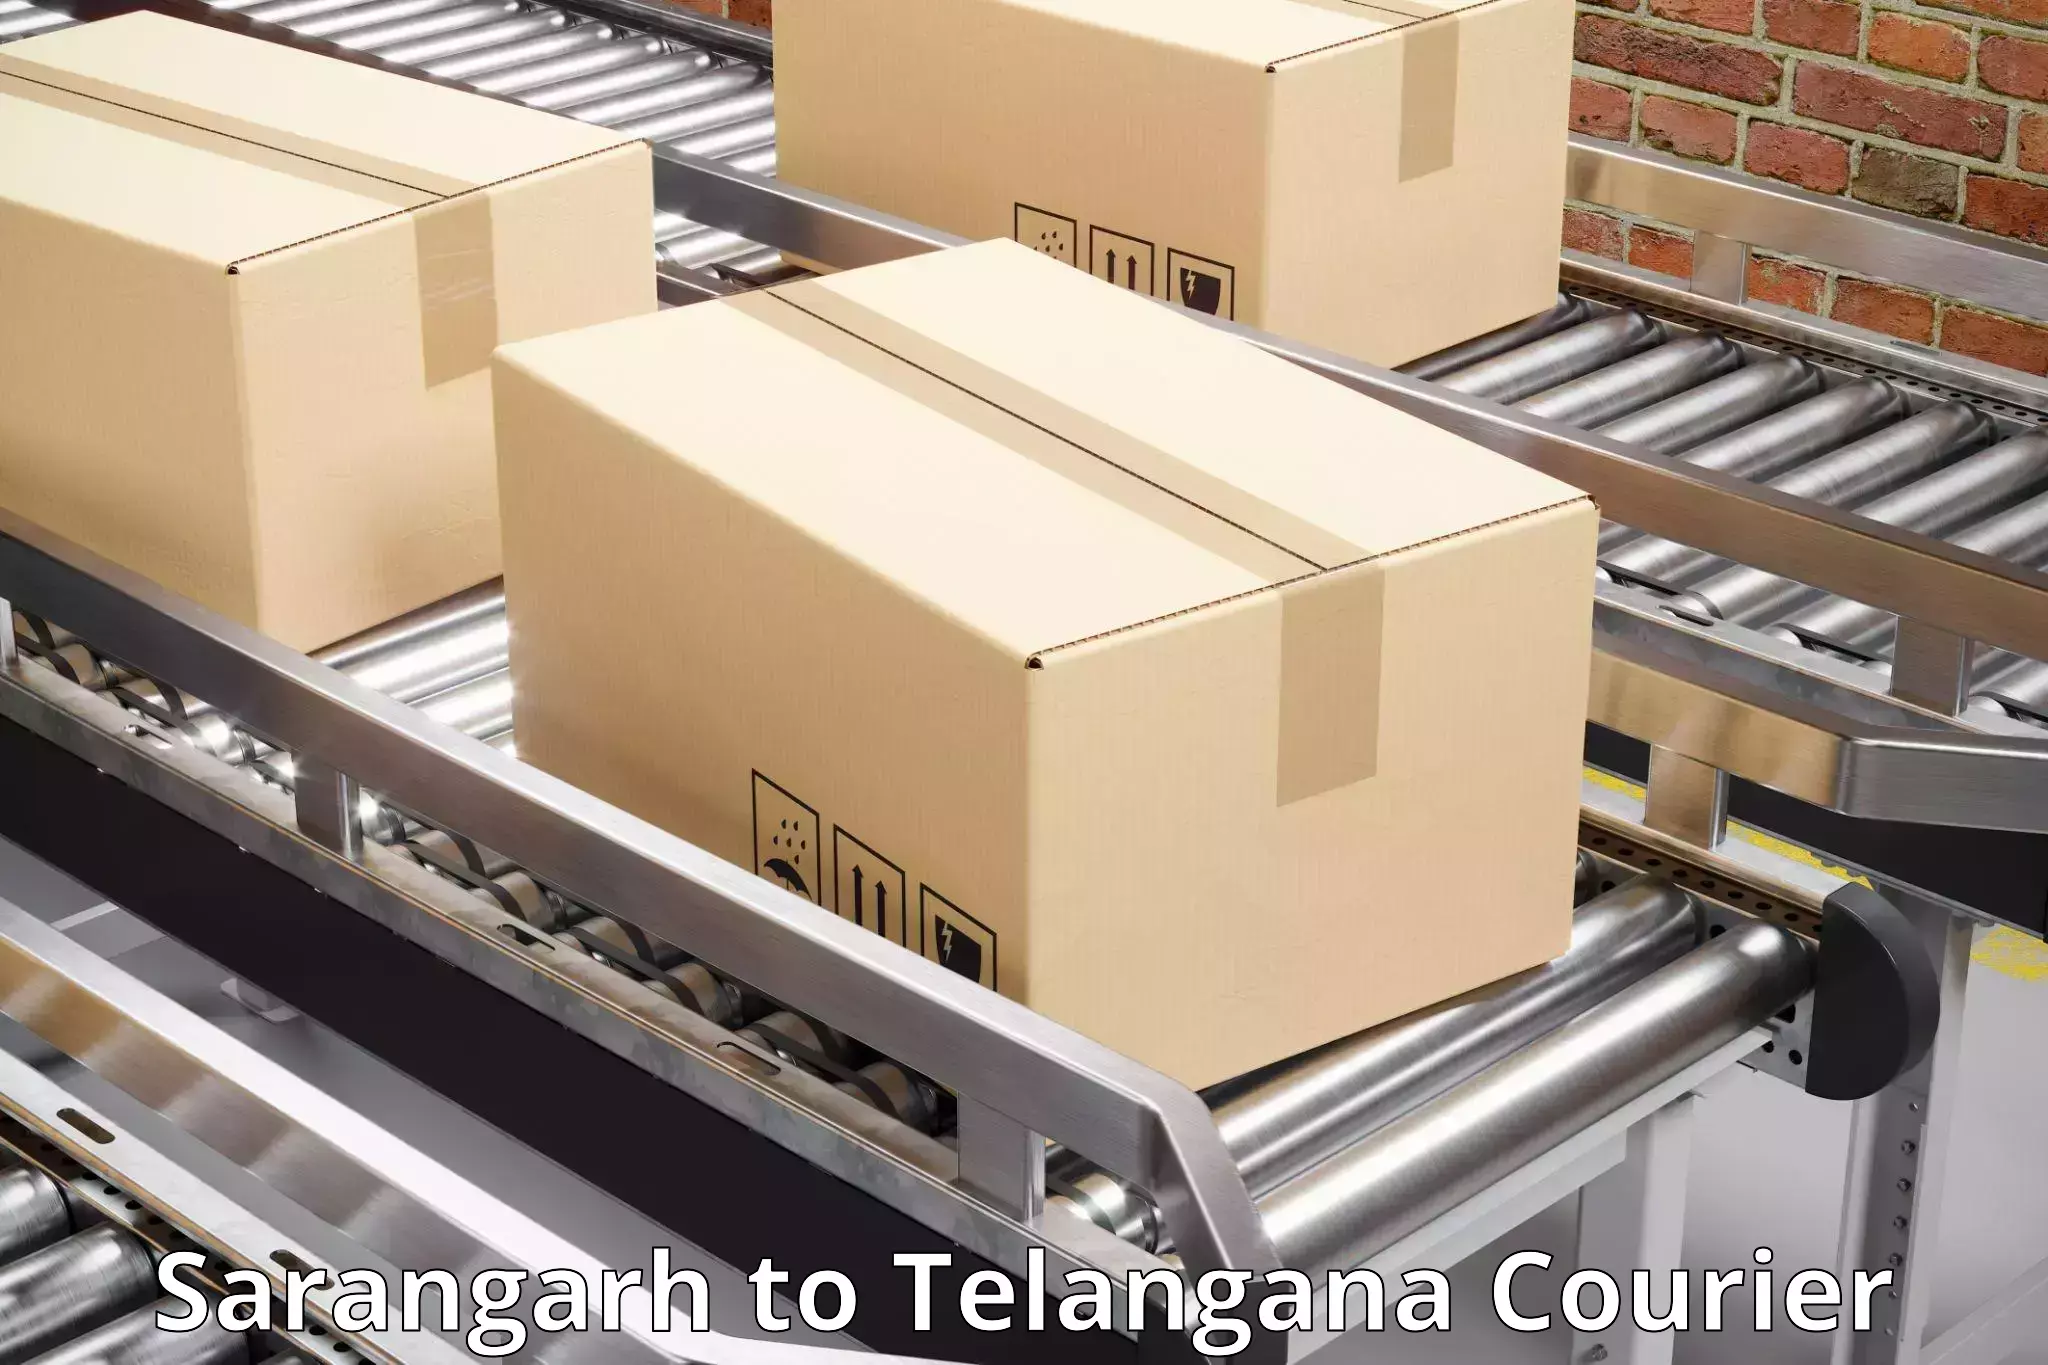 Multi-package shipping in Sarangarh to Bhadrachalam